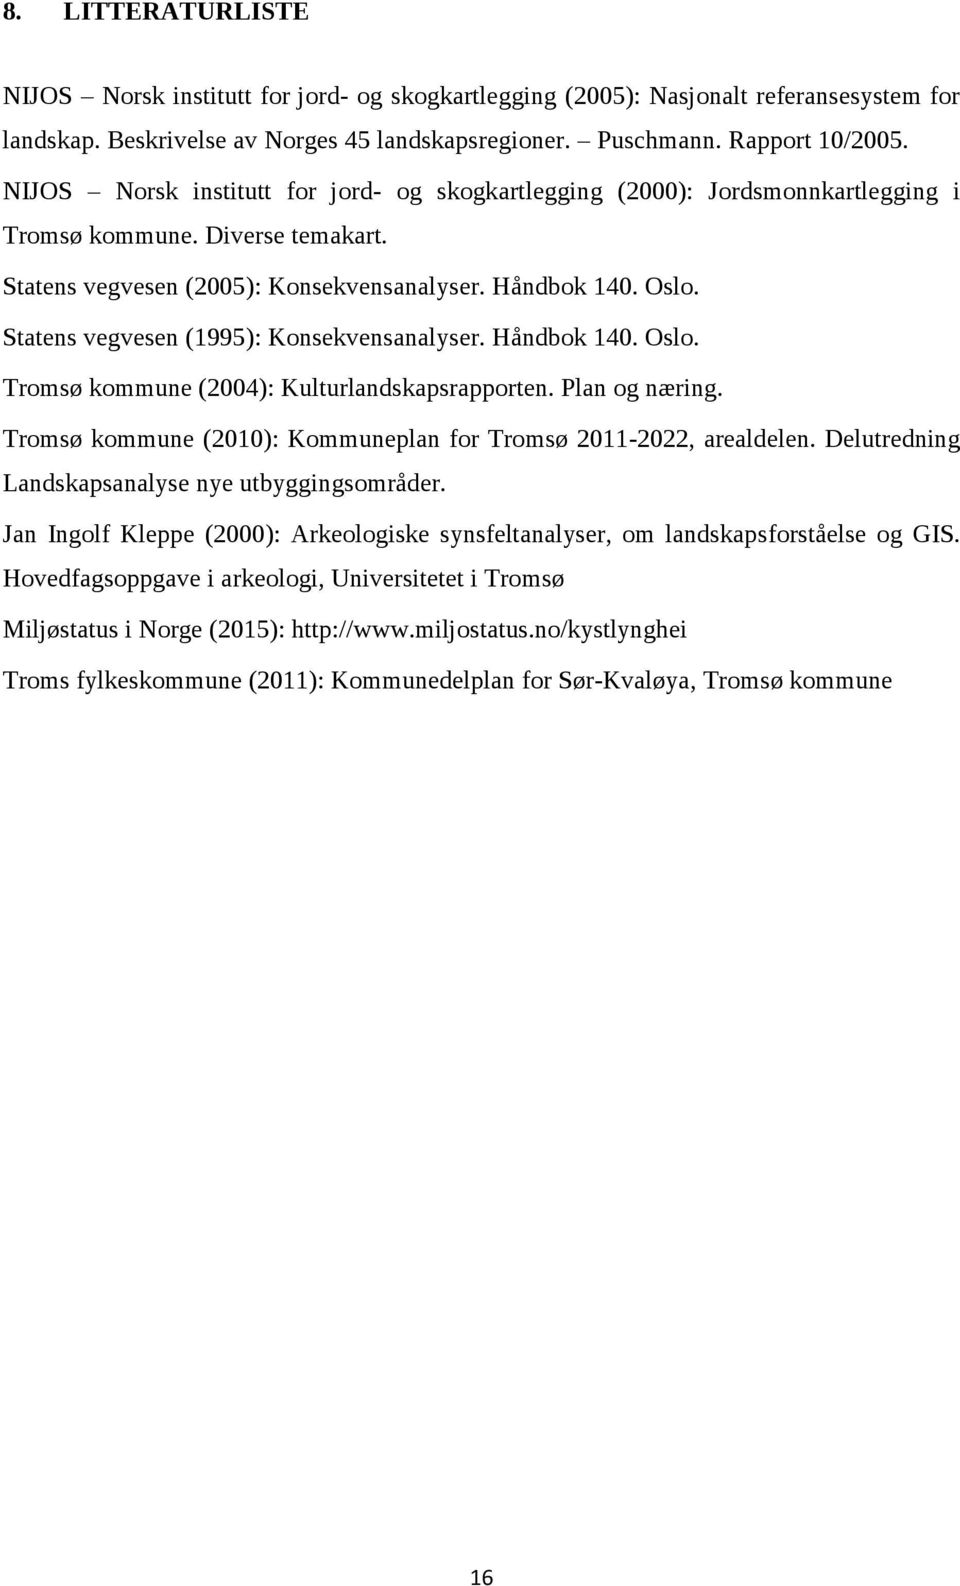 Statens vegvesen (1995): Konsekvensanalyser. Håndbok 140. Oslo. Tromsø kommune (2004): Kulturlandskapsrapporten. Plan og næring. Tromsø kommune (2010): Kommuneplan for Tromsø 2011-2022, arealdelen.